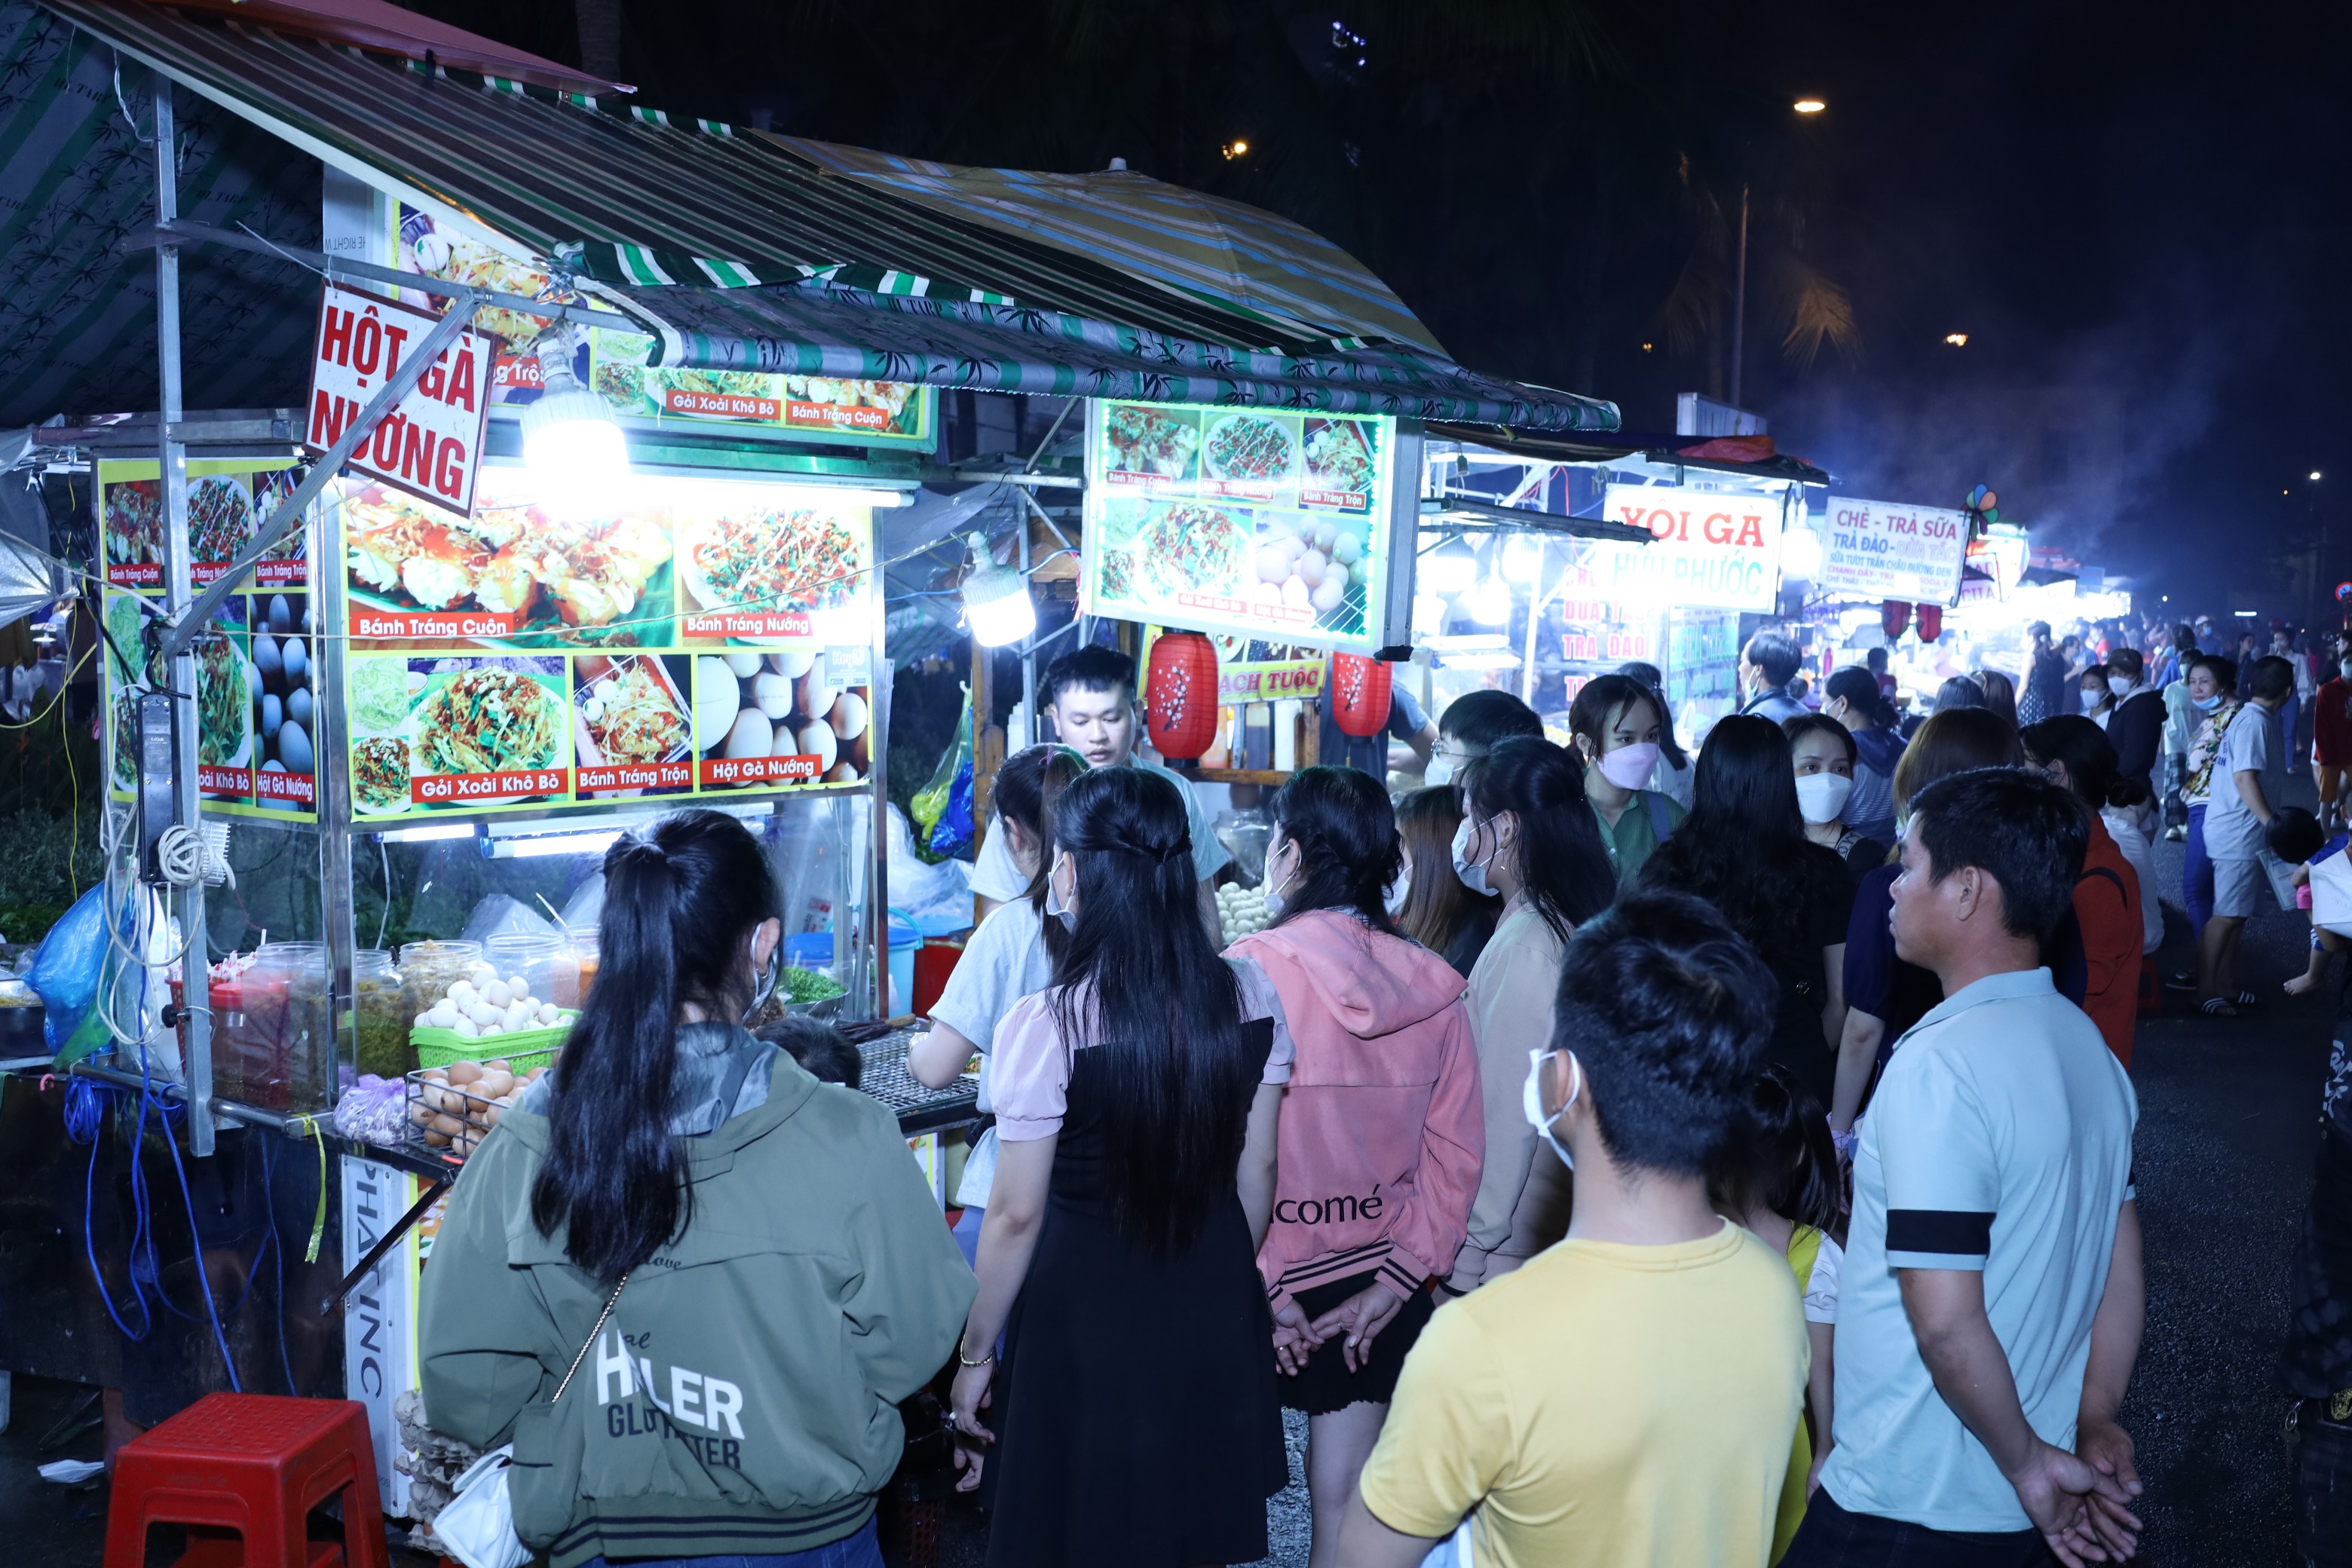 Khu vực ẩm thực các món ăn đa dạng, phong phú nên thu hút rất đông du khách.